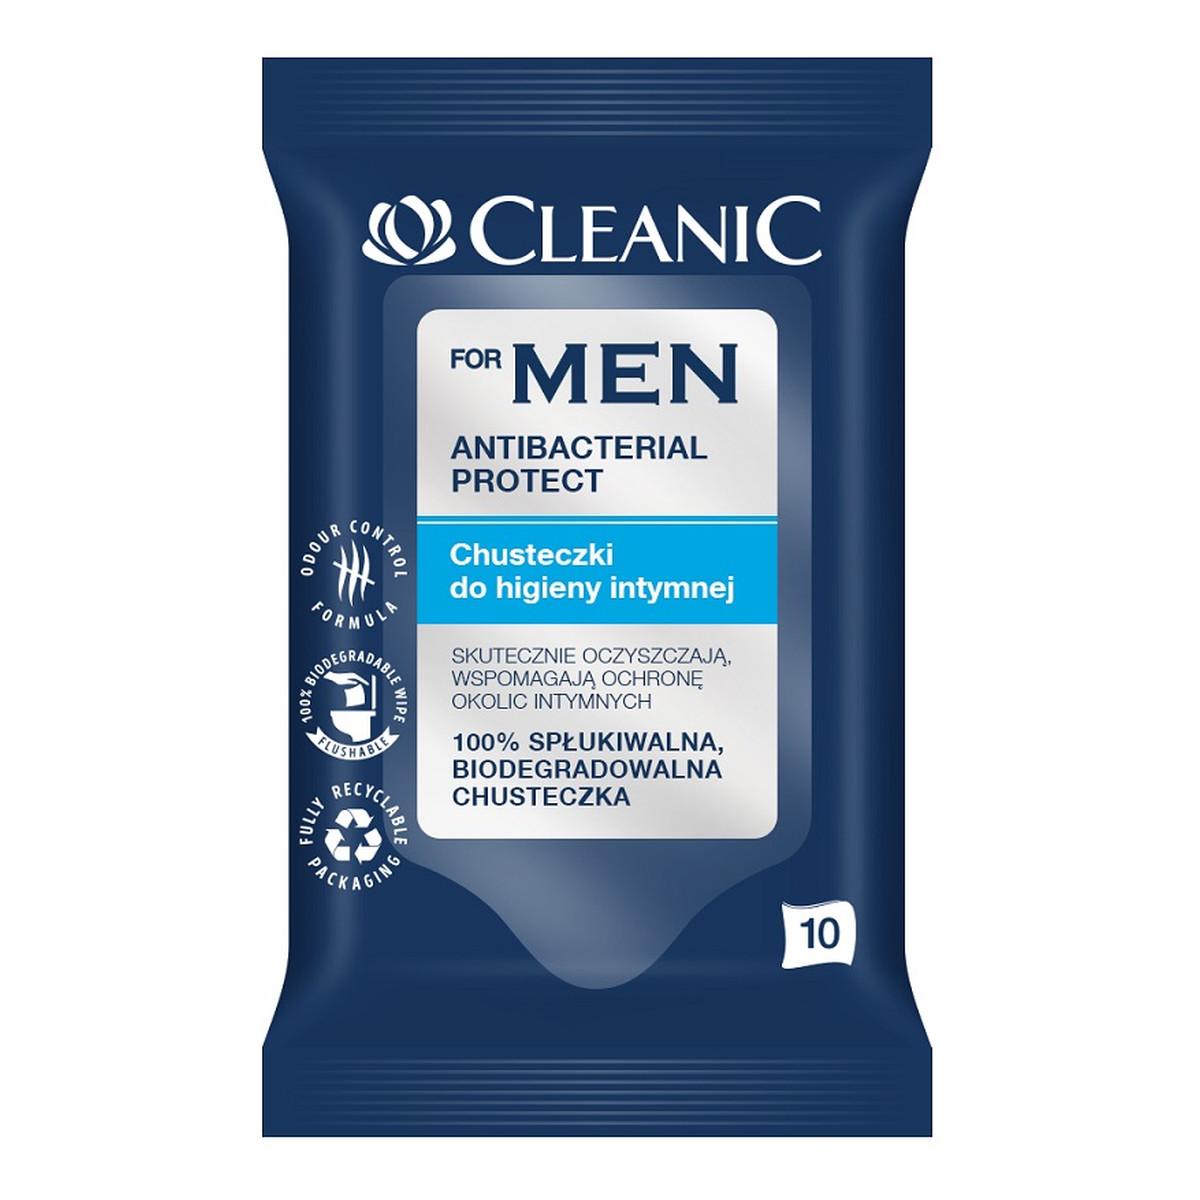 Cleanic For Men Antibacterial Protect antybakteryjne chusteczki do higieny intymnej 10 sztuk